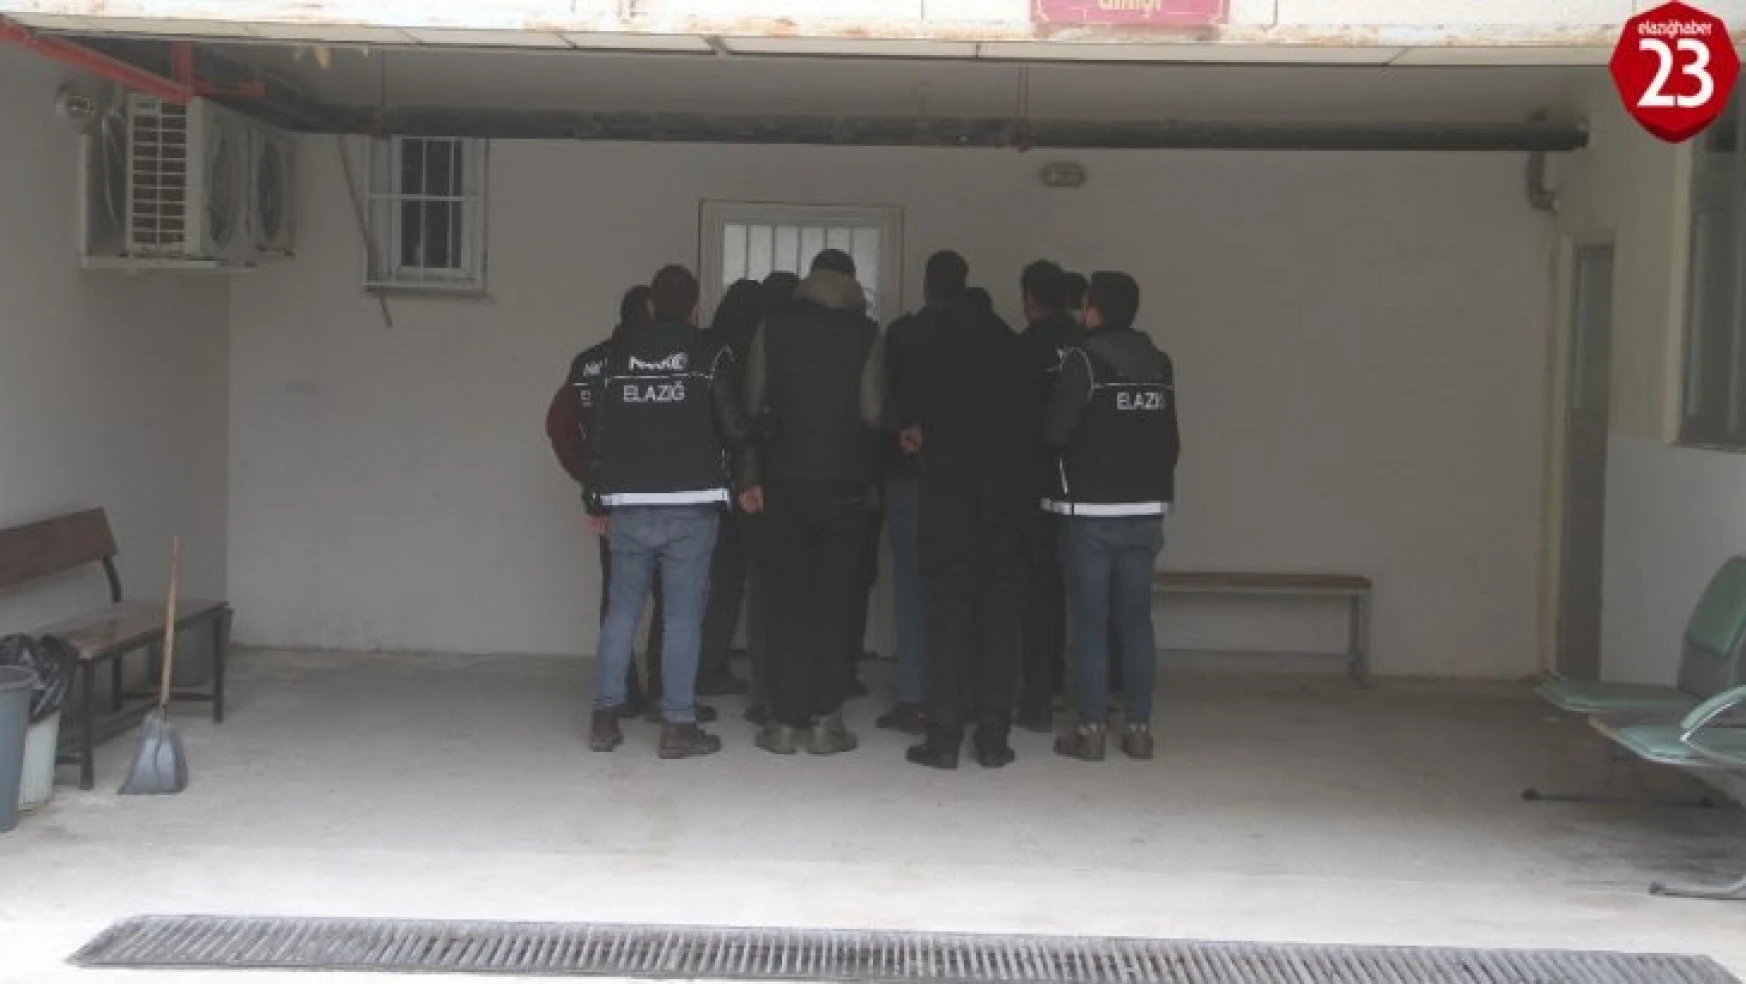 Elazığ'da uyuşturucu operasyonu: 7 gözaltı